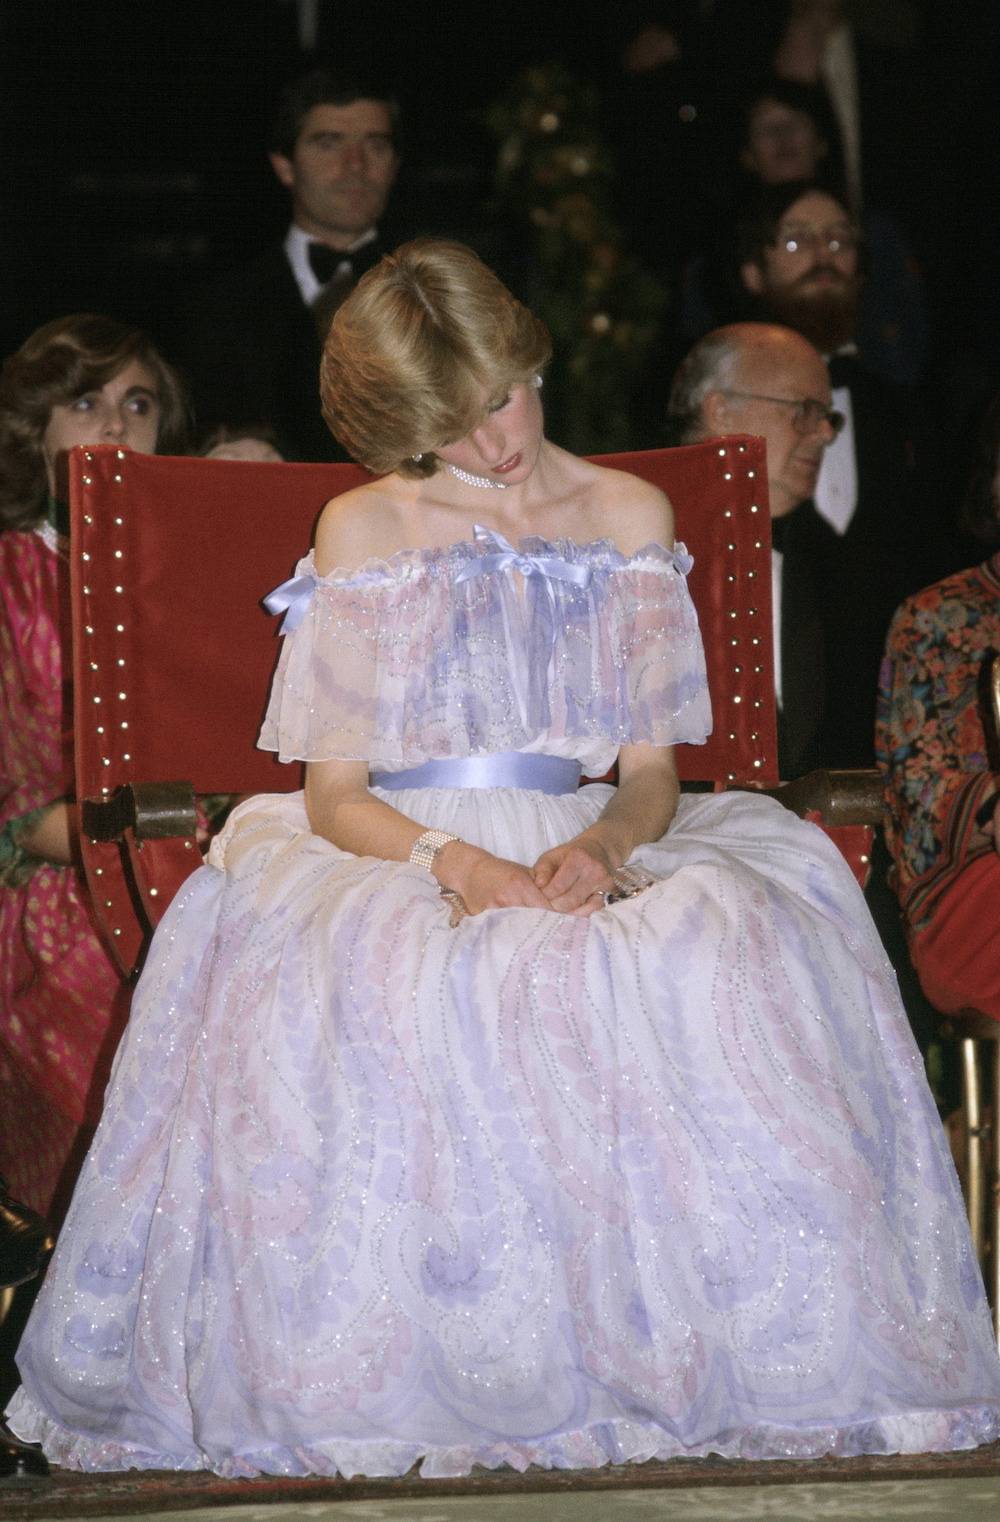 Historia jednego zdjęcia: Śpiąca Lady Di w 1981 roku. Uchwycona przez fotografa w listopadzie 1981 roku podczas gali w Muzeum Victorii i Alberta przypominała współczesną Śpiącą Królewnę.